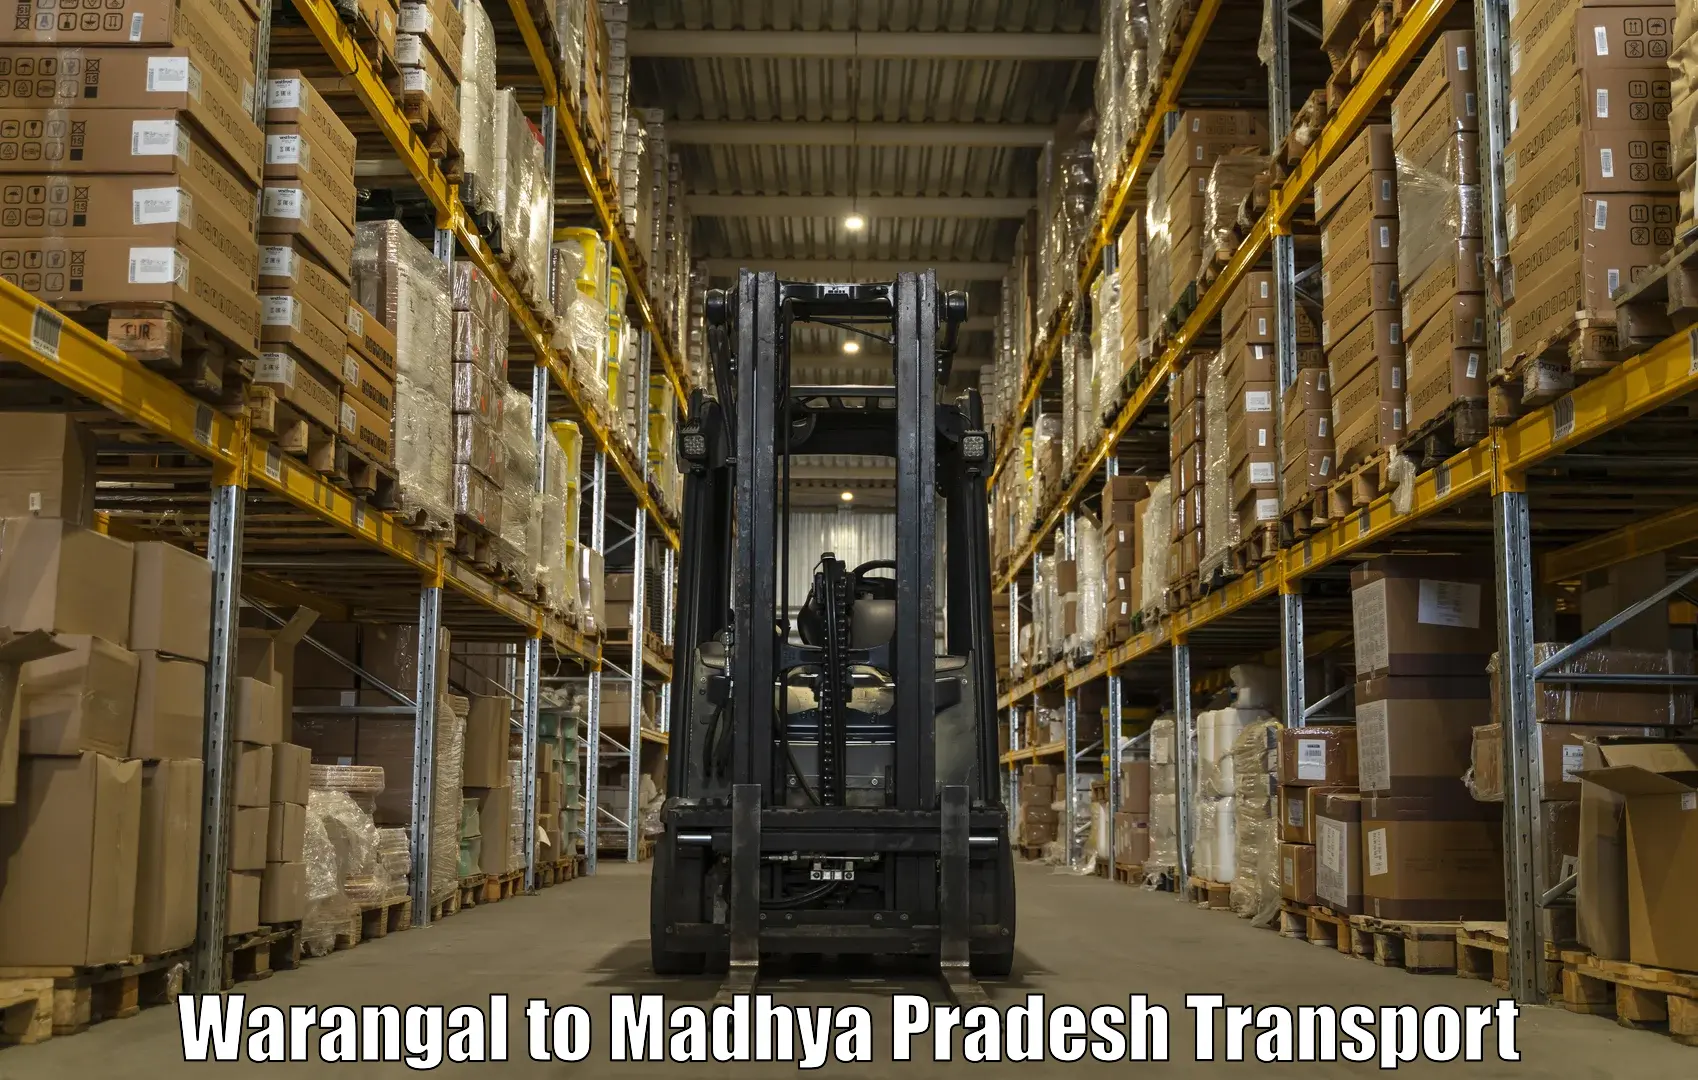 Furniture transport service Warangal to Jatara